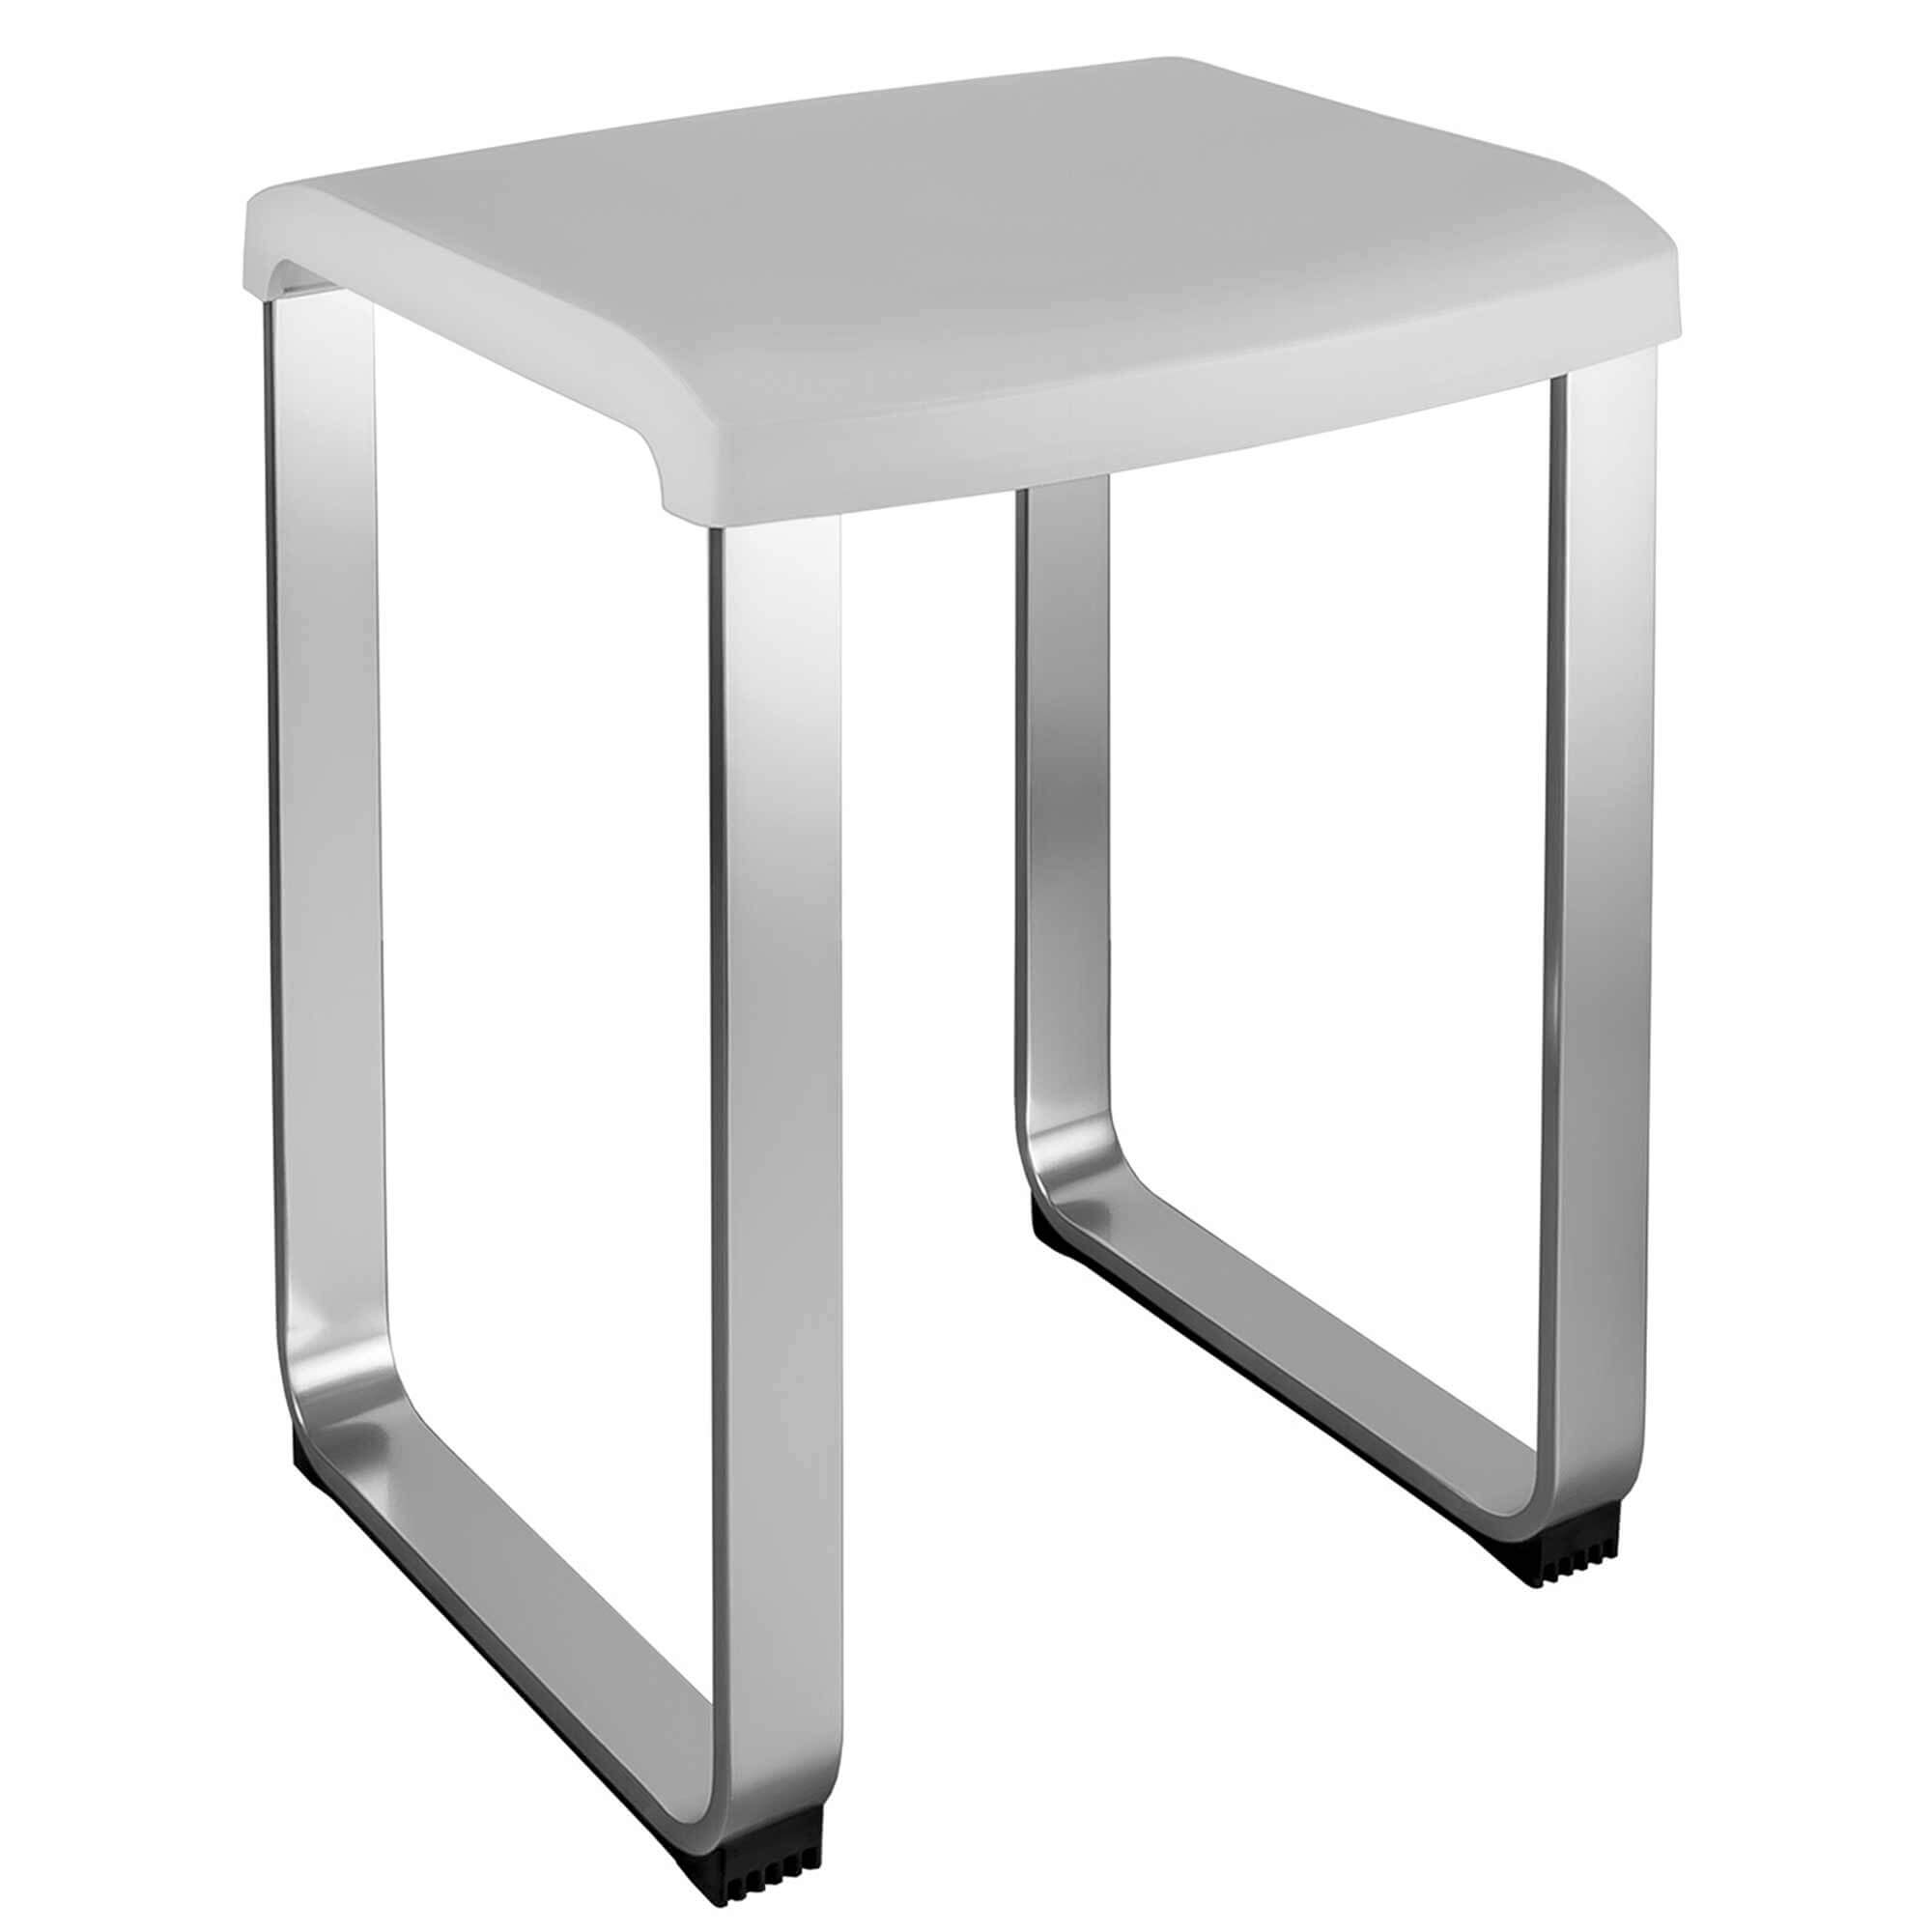 Colombo Design B99670-BI CONTRACT FLAT sgabello, seduta in resina  termoplastica, struttura in alluminio anodizzato, colore bianco